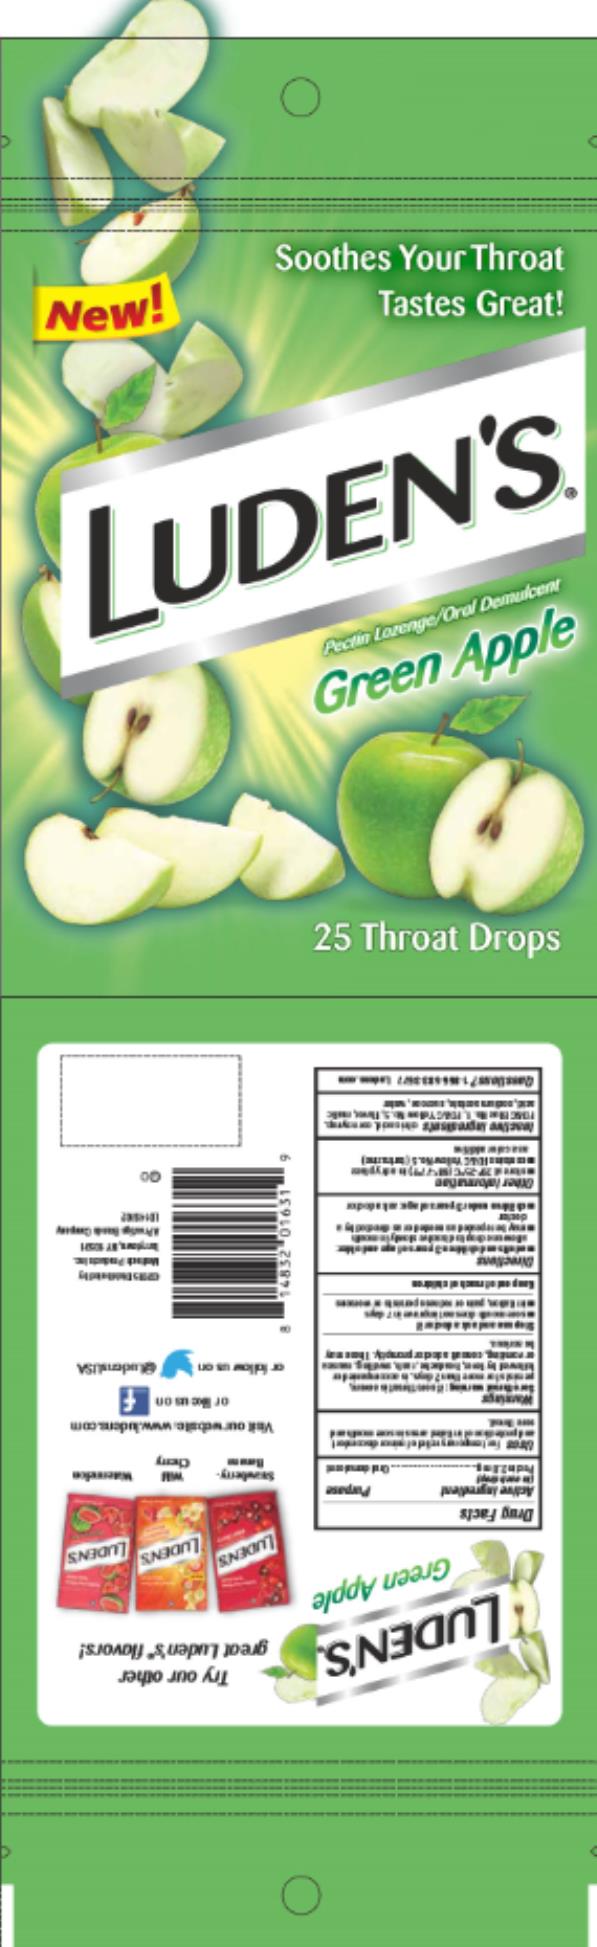 Luden’s Green Apple
Pectin lozenge / Oral Demulcent 
25 Throat drops
